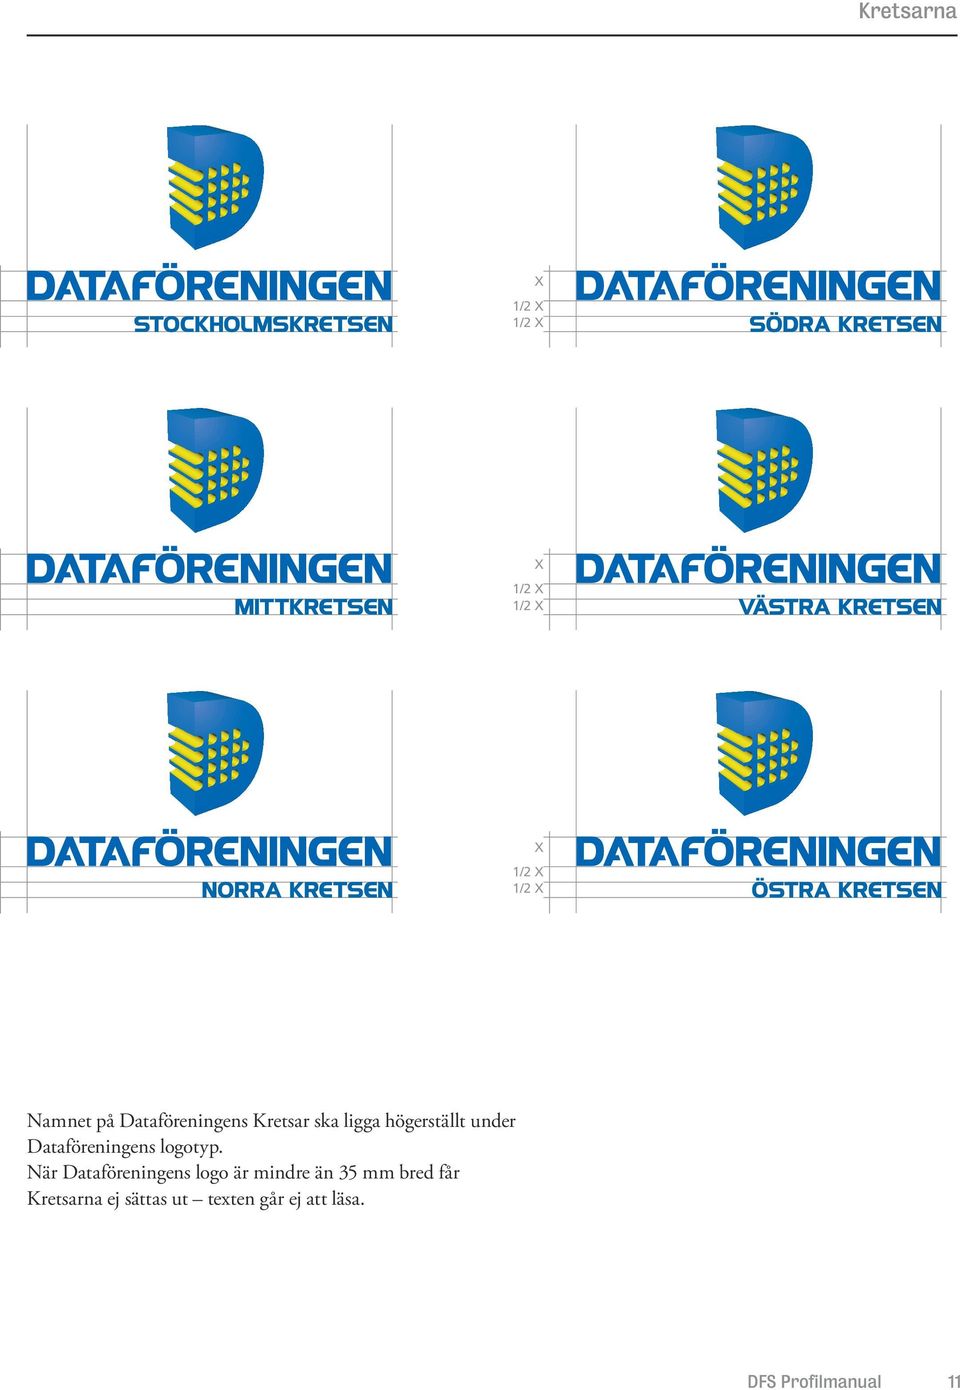 När Dataföreningens logo är mindre än 35 mm bred får Kretsarna ej användas. Det går ej att läsa.